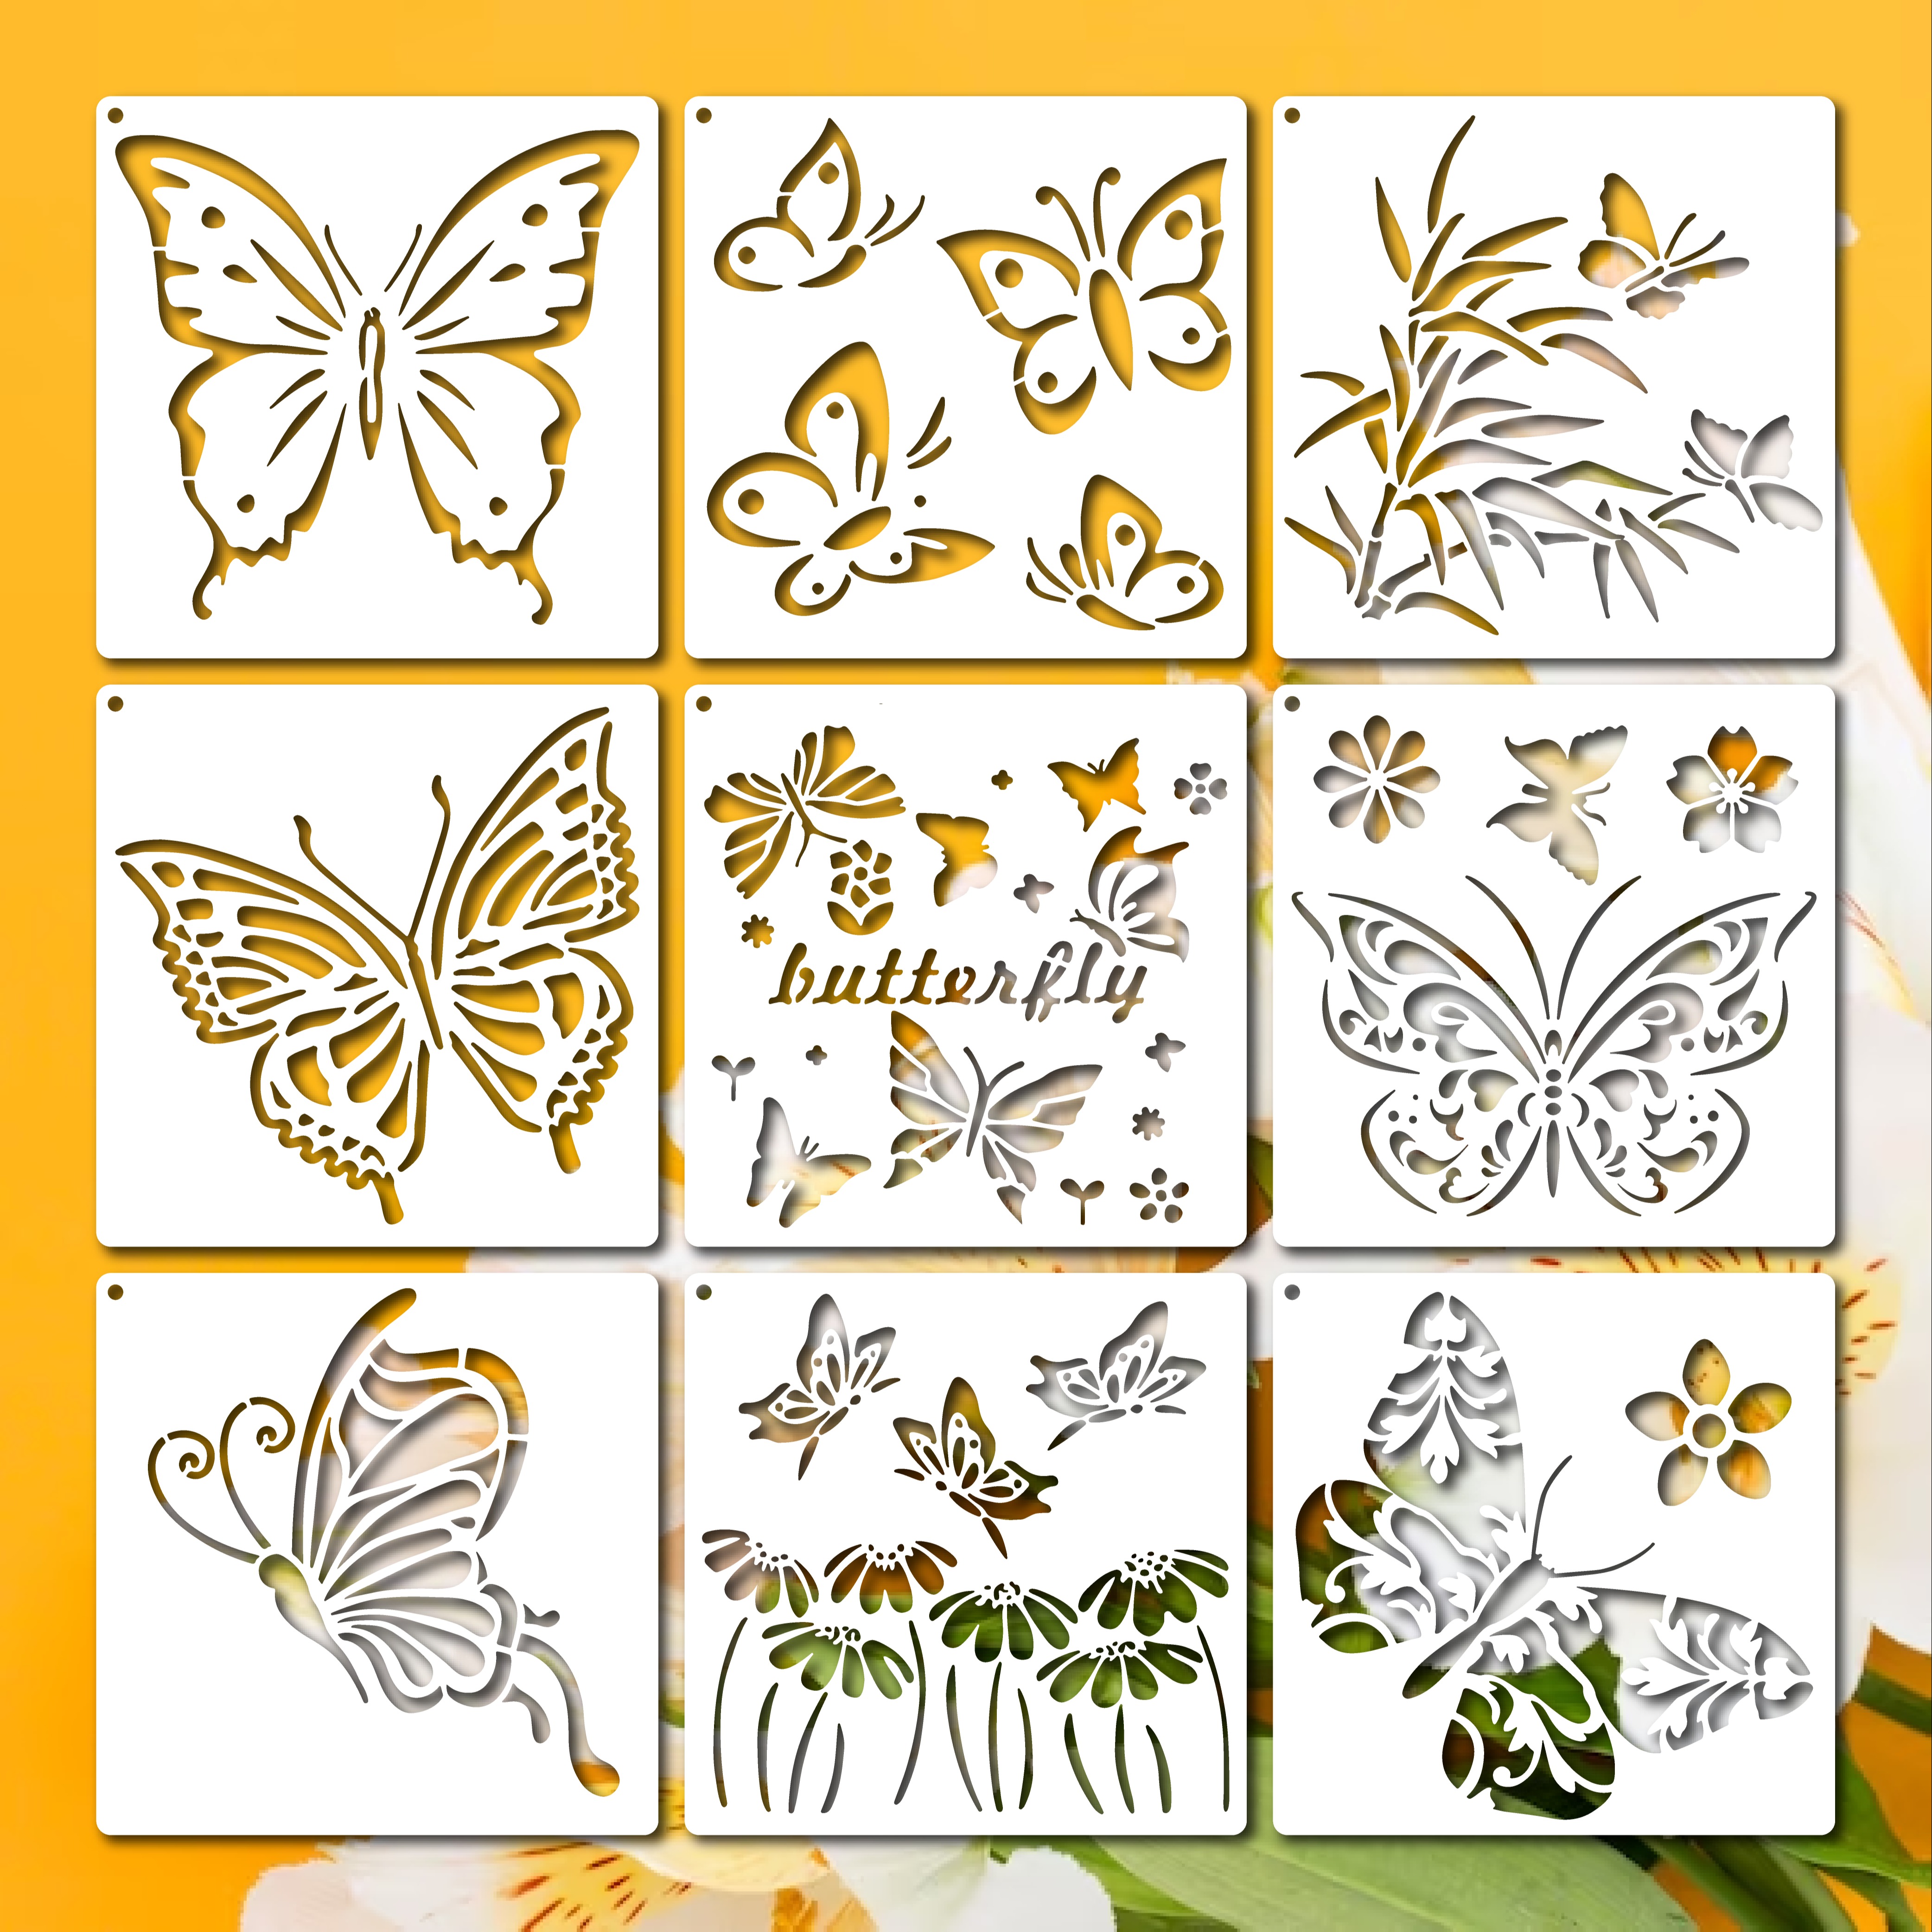 11 ideas de Mariposas voladoras  manualidades, mariposas, como hacer  mariposas